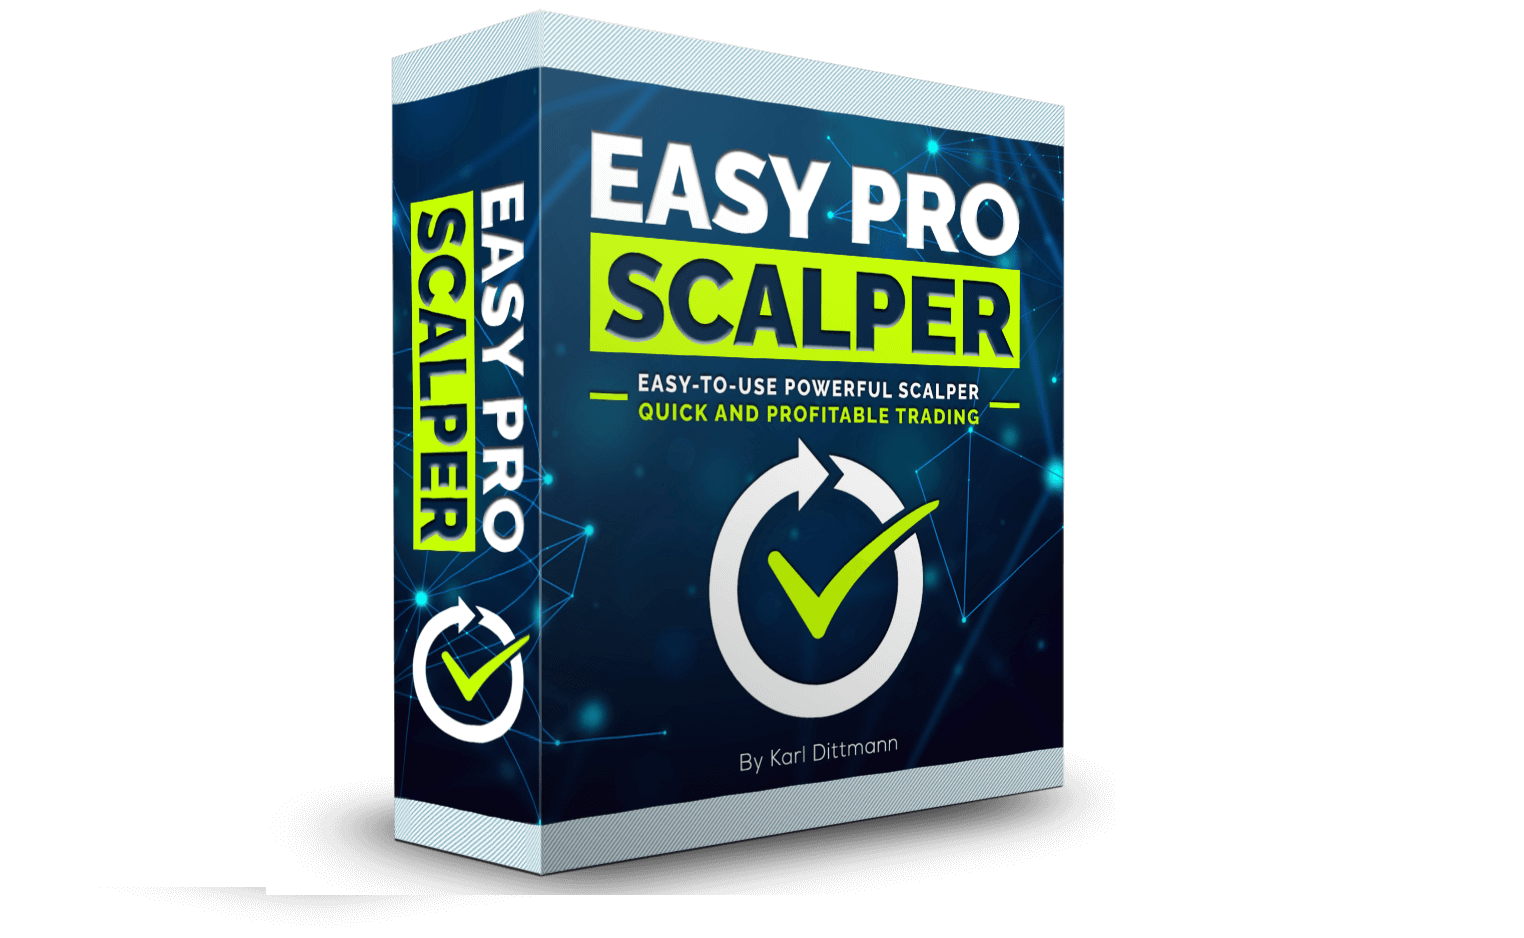 Easy Pro Scalper